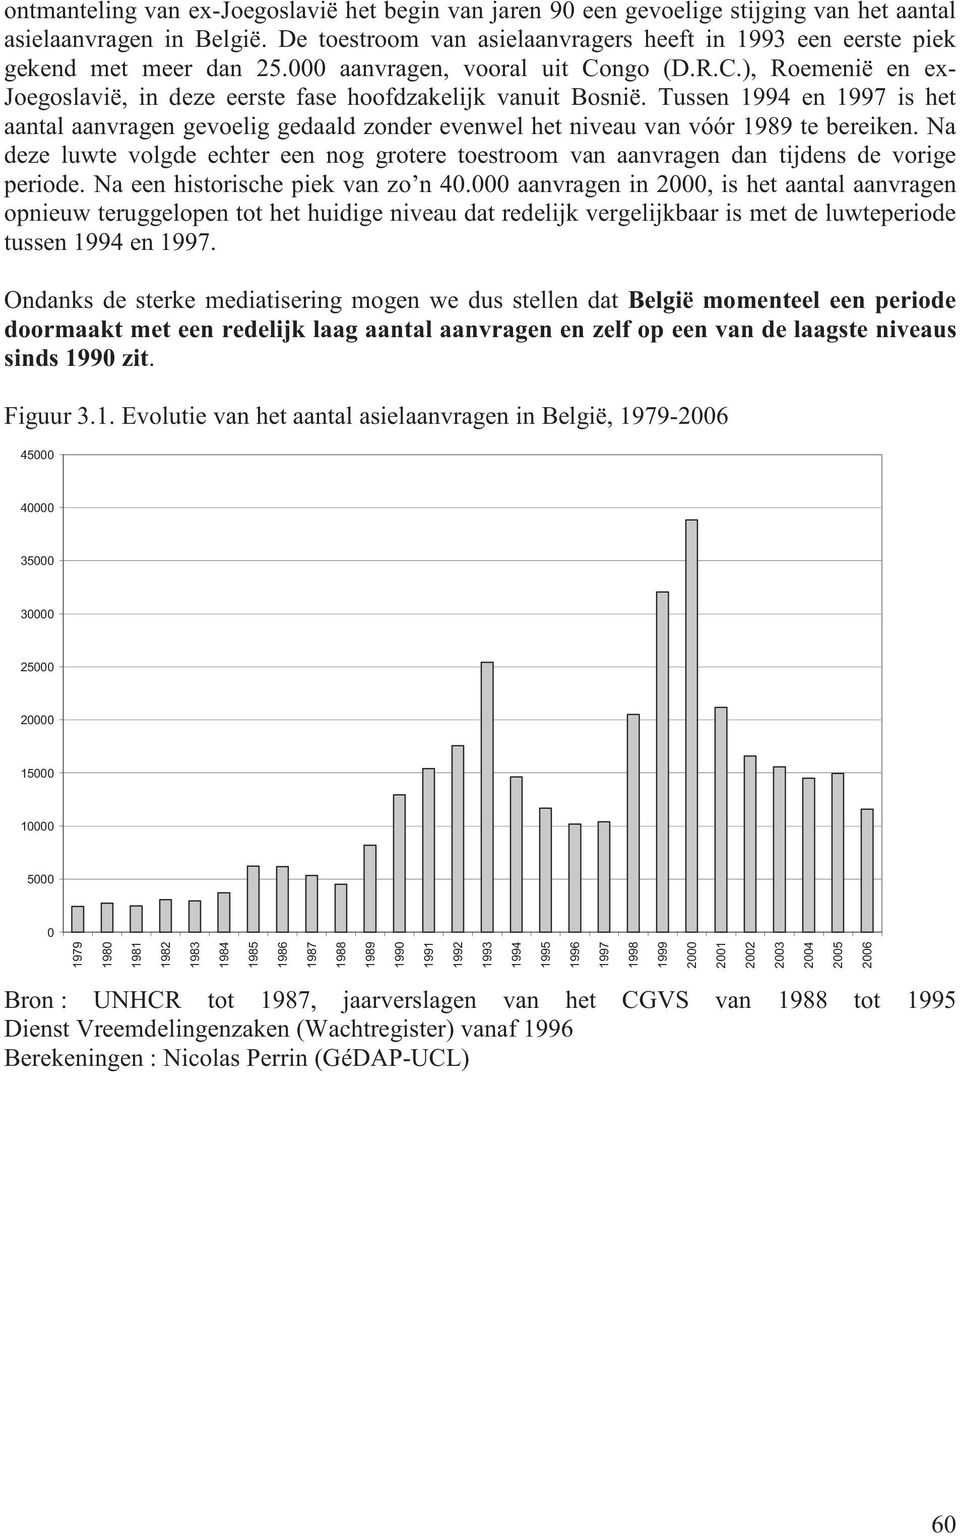 Tussen 1994 en 1997 is het aantal aanvragen gevoelig gedaald zonder evenwel het niveau van vóór 1989 te bereiken.